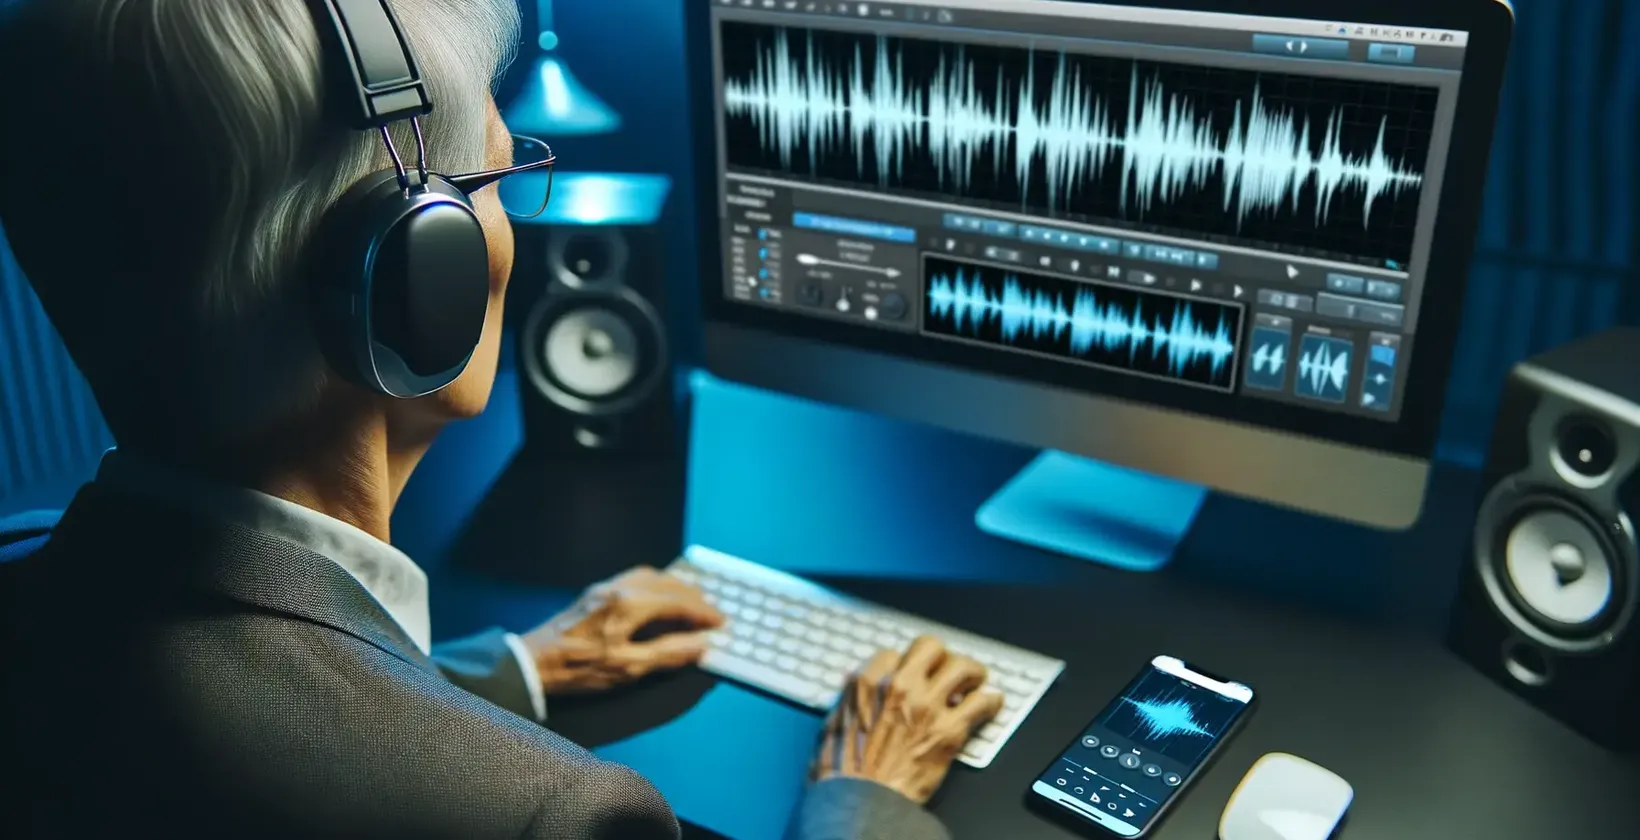 सुनने में मुश्किल दृश्य के लिए टेक्स्ट टू टेक्स्ट में चांदी के बालों वाले हेडफ़ोन को चश्मे के साथ नीली रोशनी वाली डेस्क पर काम करते हुए दिखाया गया है।